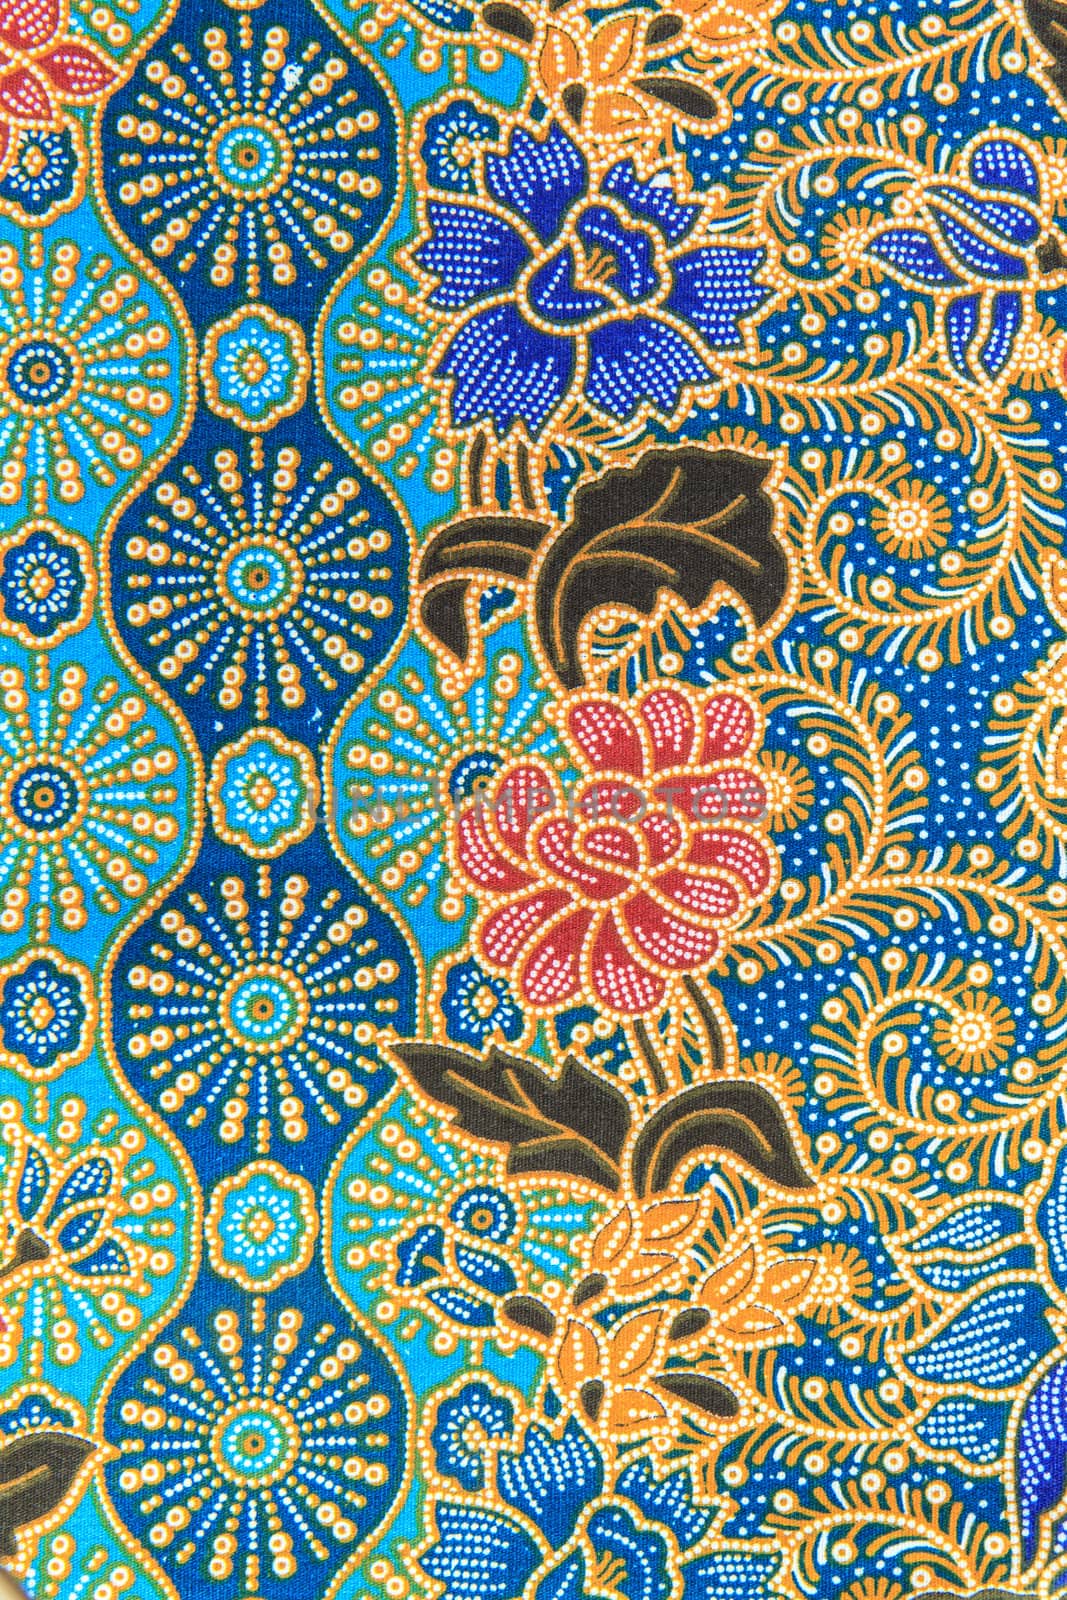 Thai silk background,Pattern of Thailand handmade







Thai silk background,Pattern of Thailand handmade